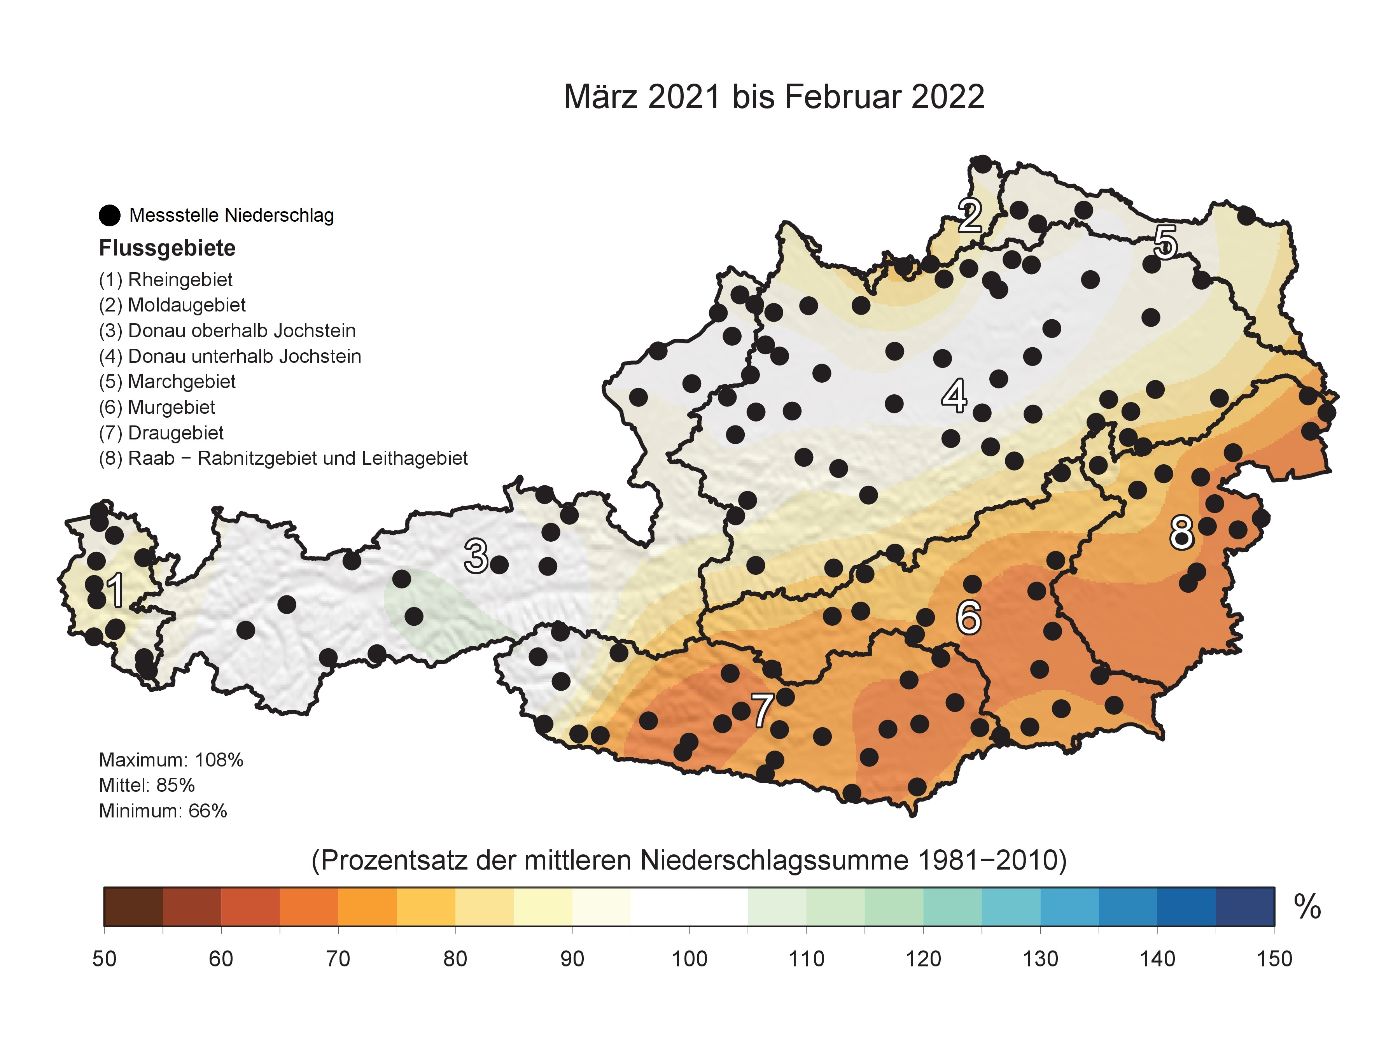 Niederschlagssumme der Periode März 2021 bis Februar 2022 als Prozentsatz des langjährigen Mittels der Periode März bis Februar (Vergleichszeitraum 1981-2010).